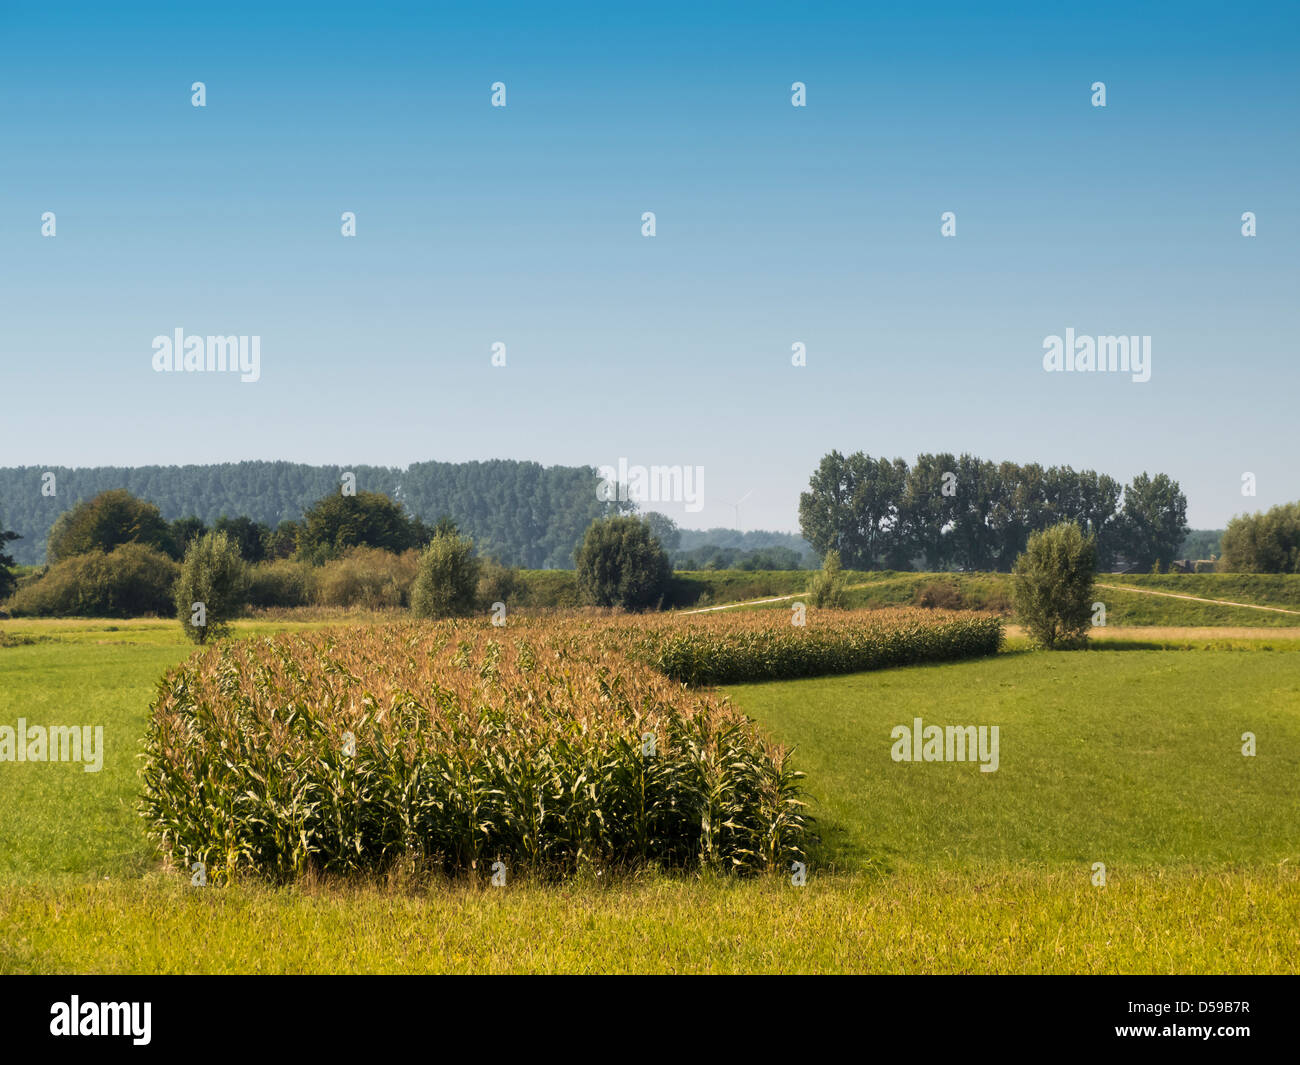 Corn Field in Landscape Stock Photo